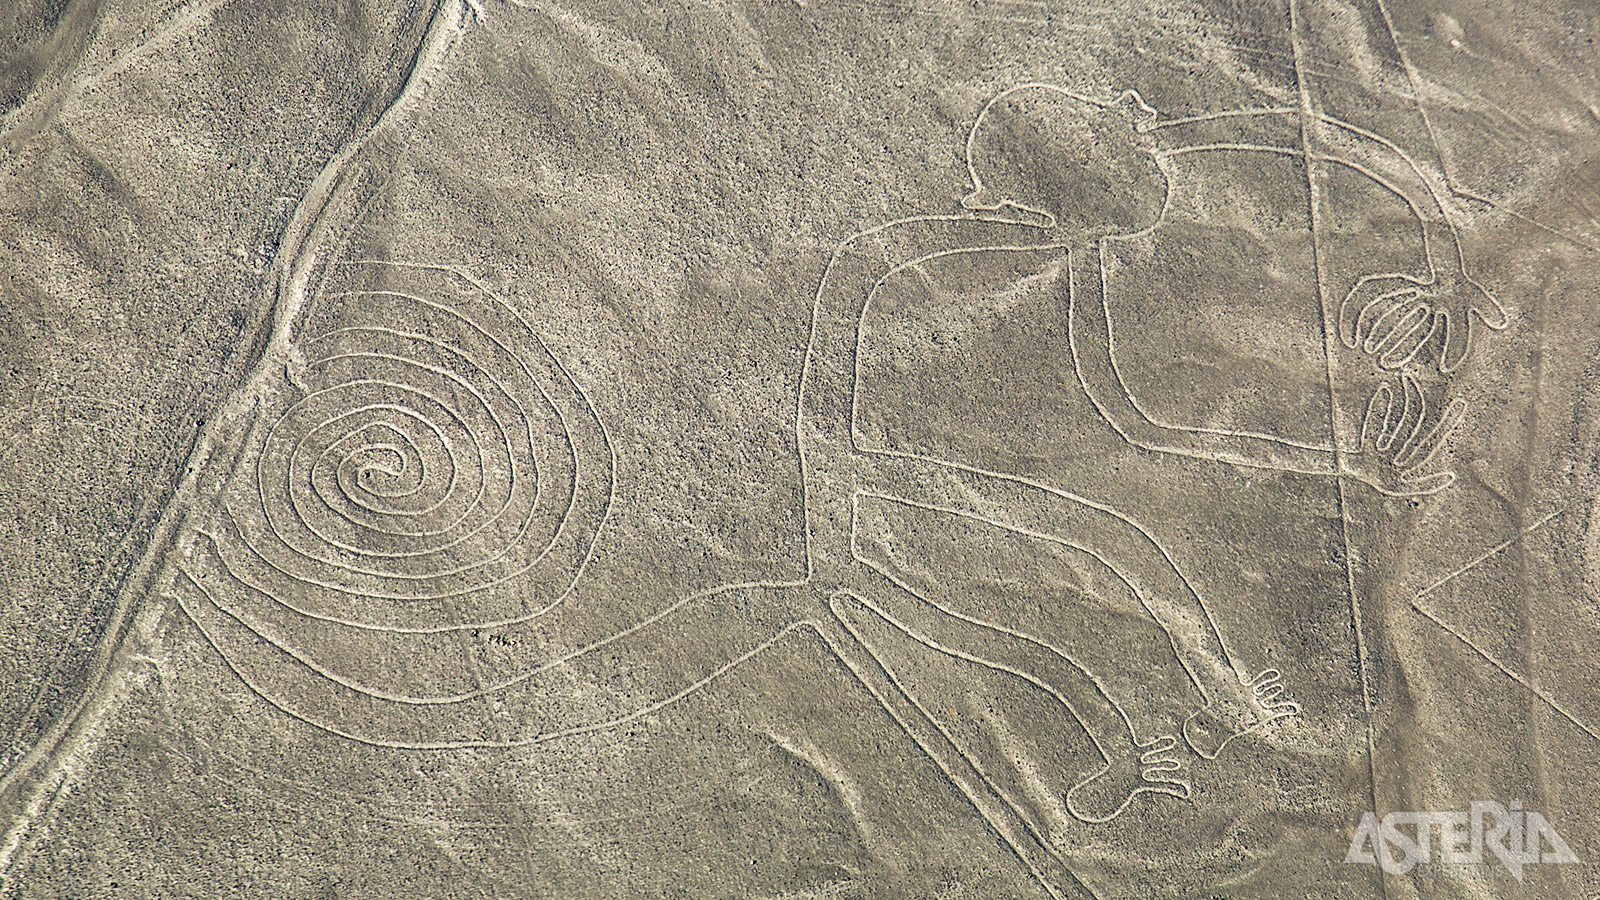 De Nazca-lijnen tonen afbeeldingen van dieren, planten en geometrische figuren waarvan sommige kilometers lang zijn